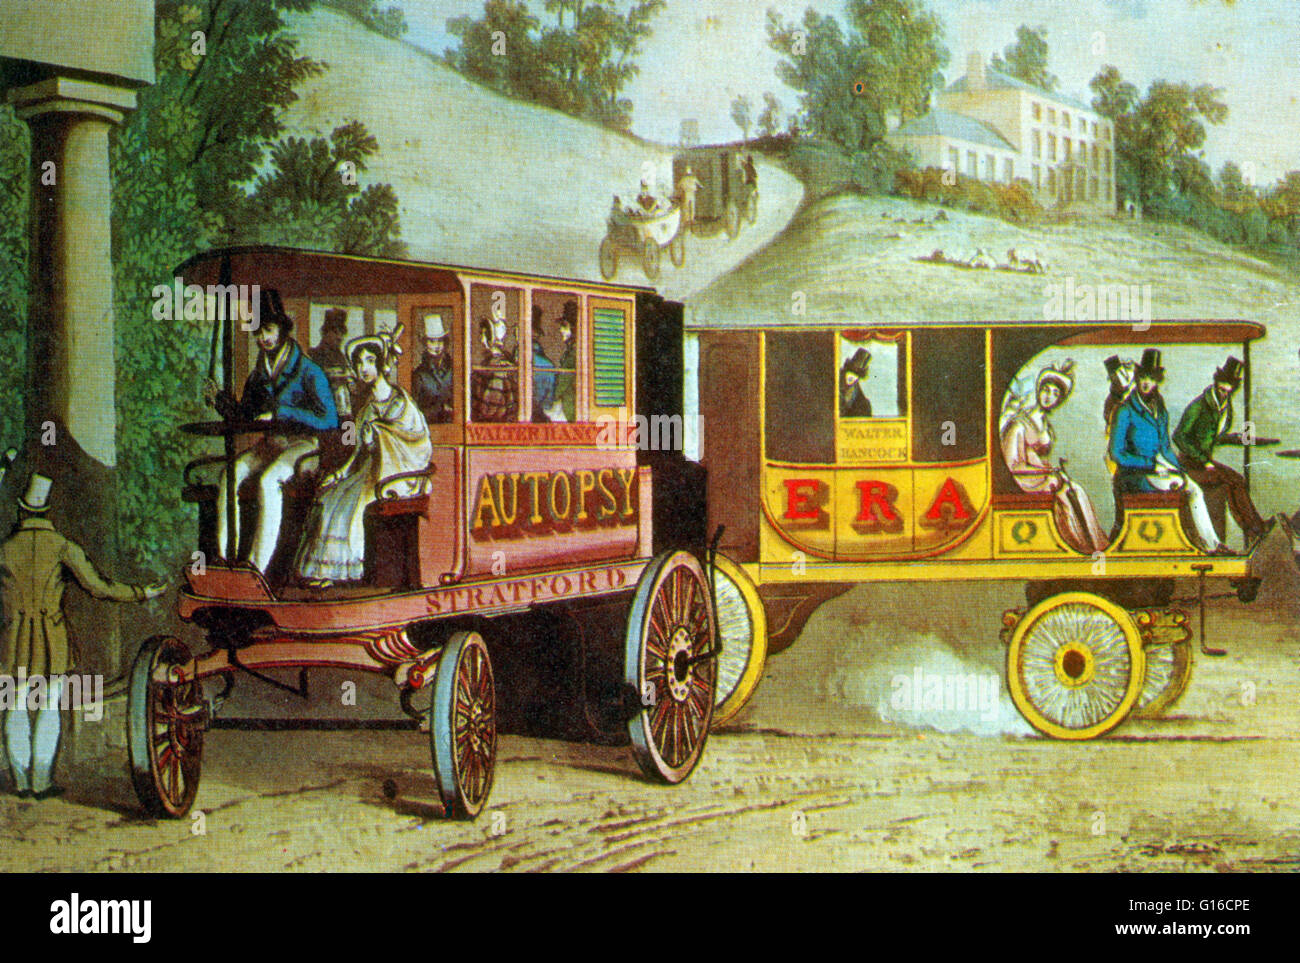 Walter Hancock (Giugno 16, 1799 - 14 Maggio 1852) era un inventore inglese del periodo vittoriano, ricordato per la sua produzione a vapore i veicoli stradali Hancock è stato uno dei pionieri che hanno portato l'allenatore di vapore ad alto livello di sviluppo. Egli ha costruito molti dei Foto Stock